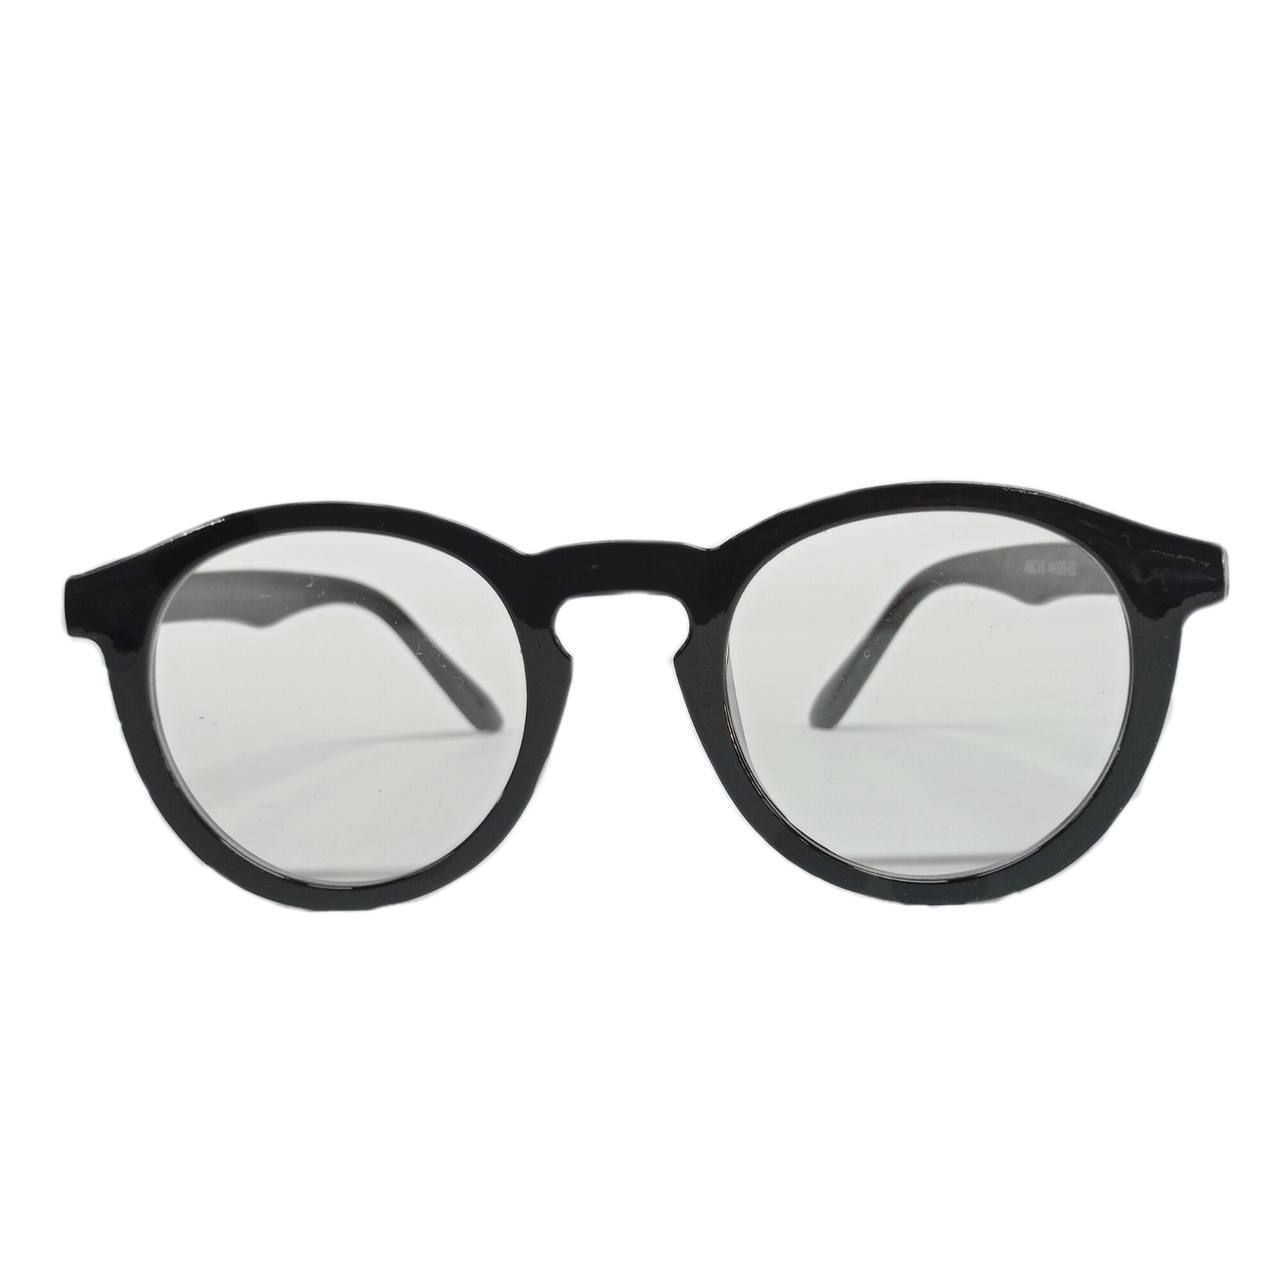 فریم عینک طبی مدل 8008 -  - 1